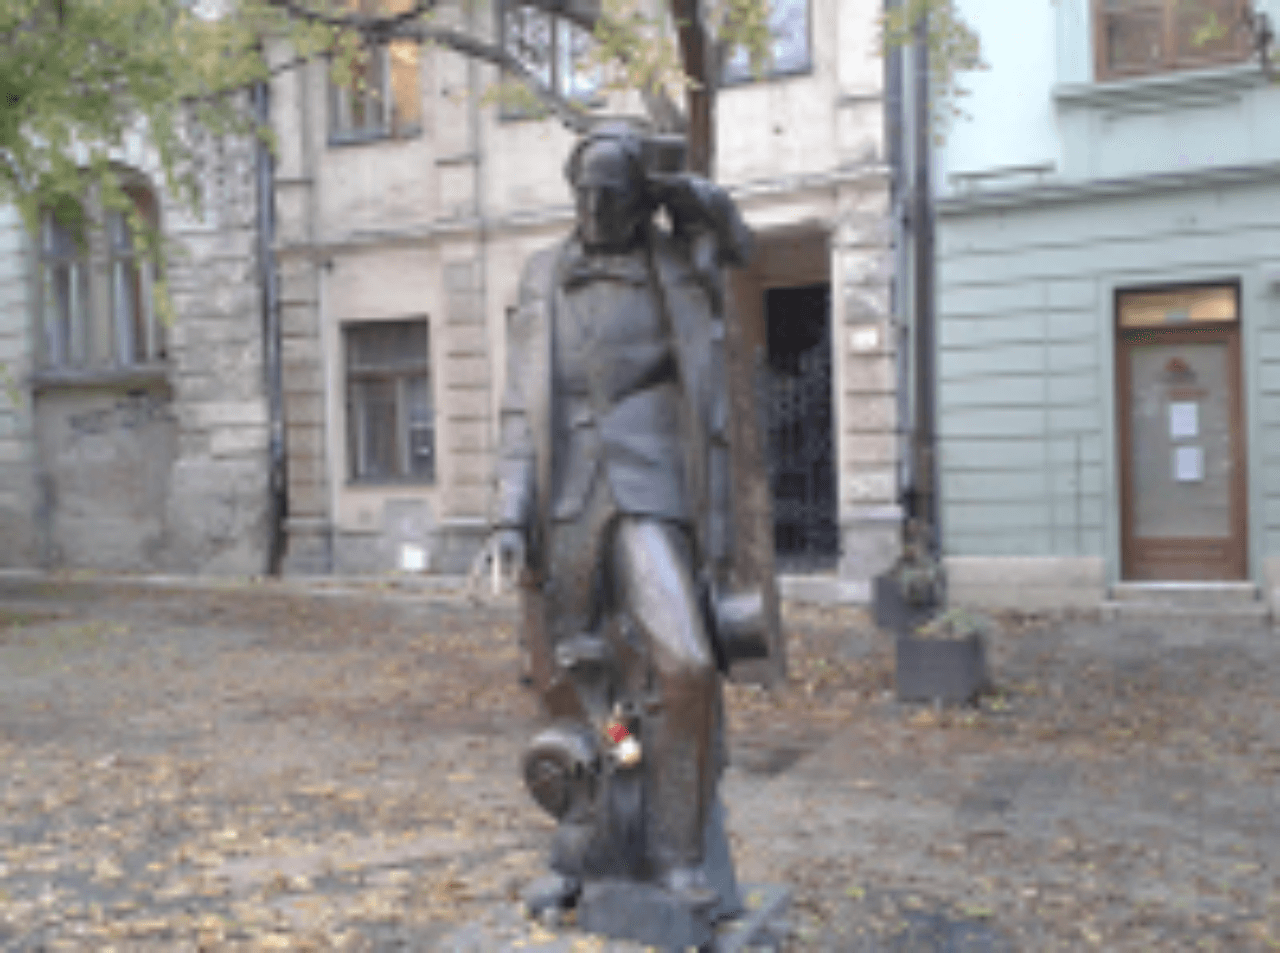 Socha Hansa Christiana Andersena na Hviezdoslavovom námestí.